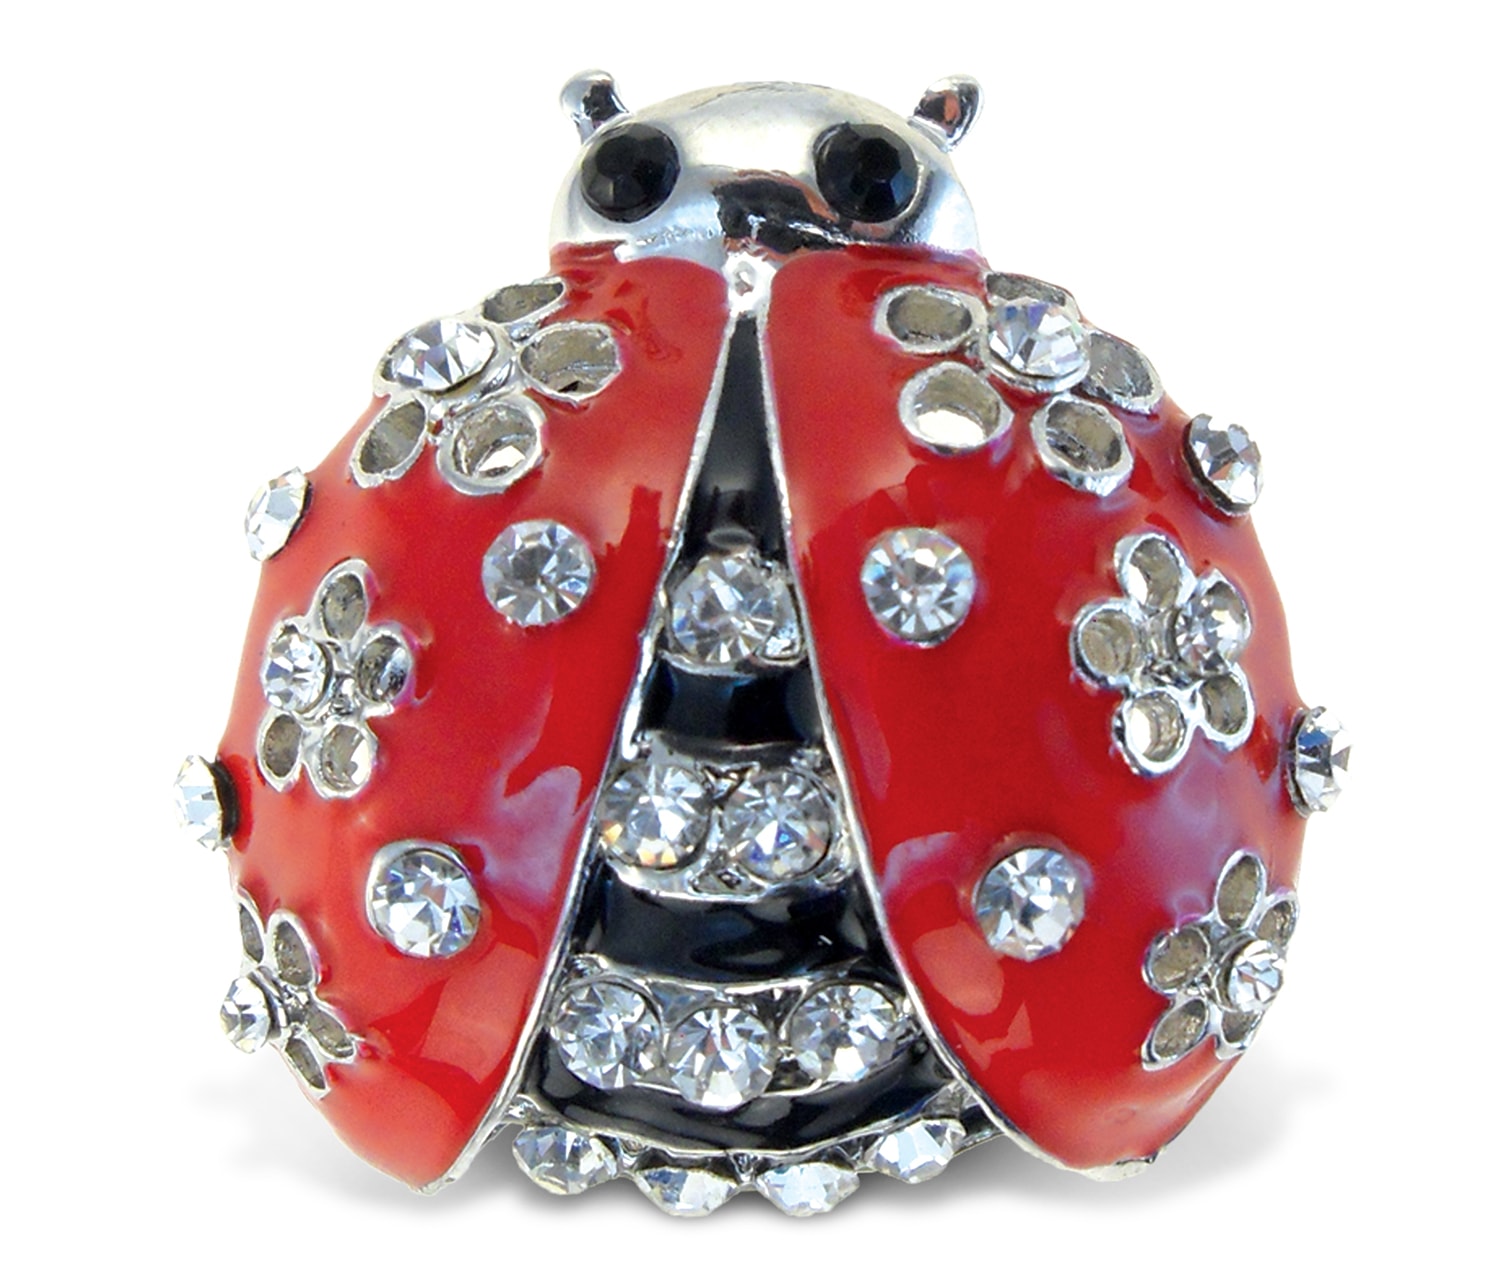 Ladybug – Sparkling Magnets